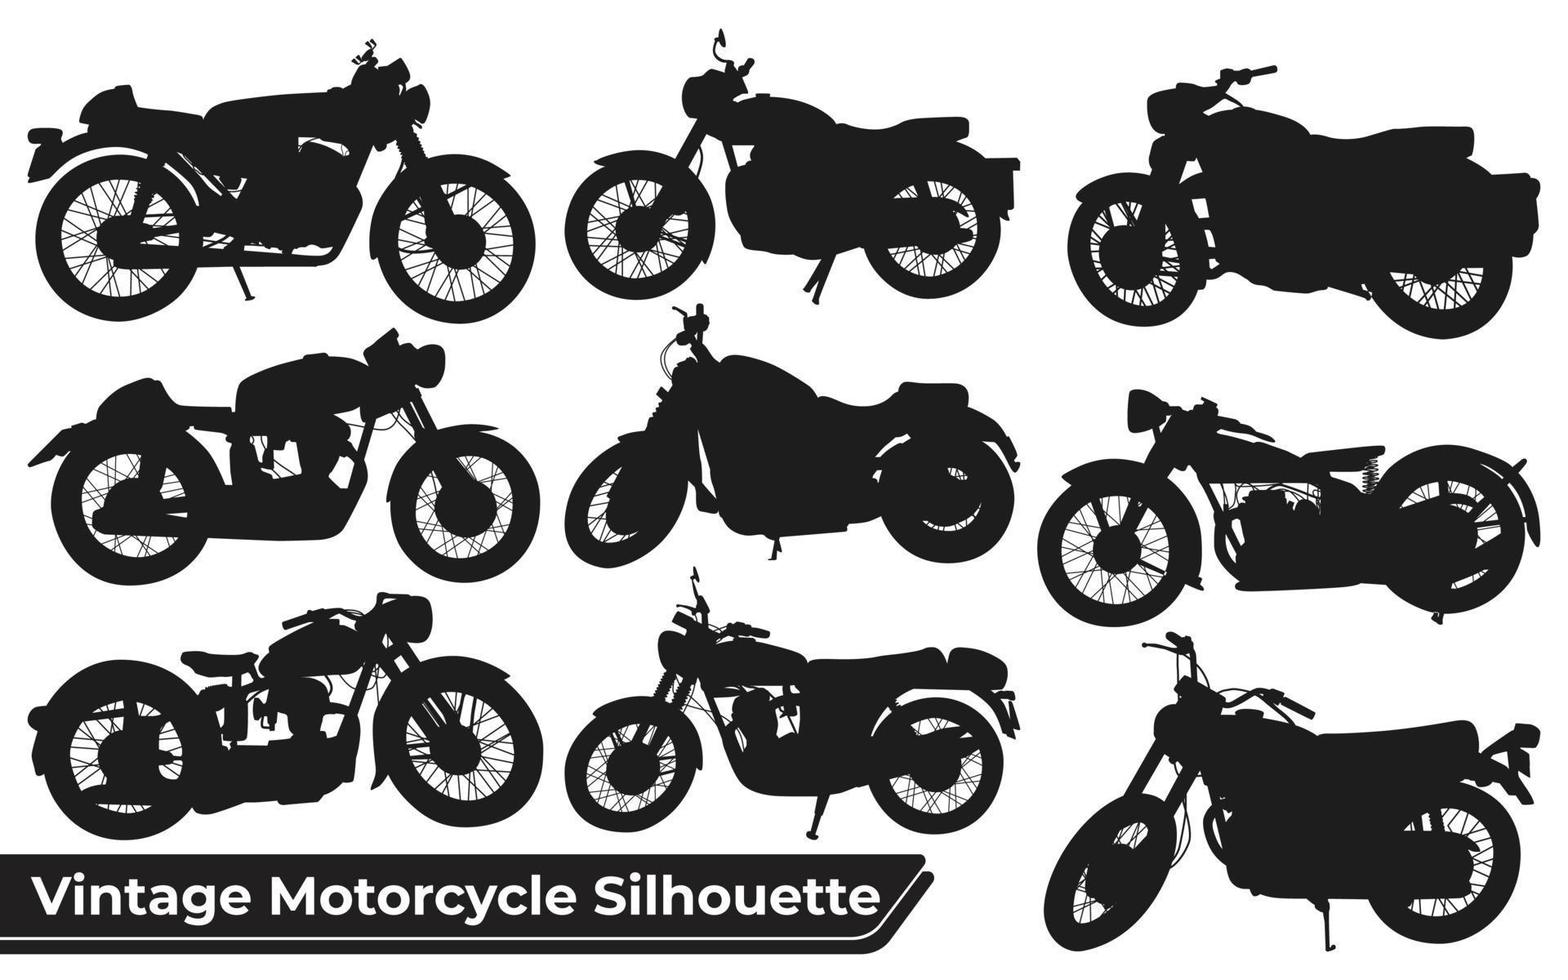 Sammlung von Vintage-Motorrad-Silhouetten-Vektor vektor